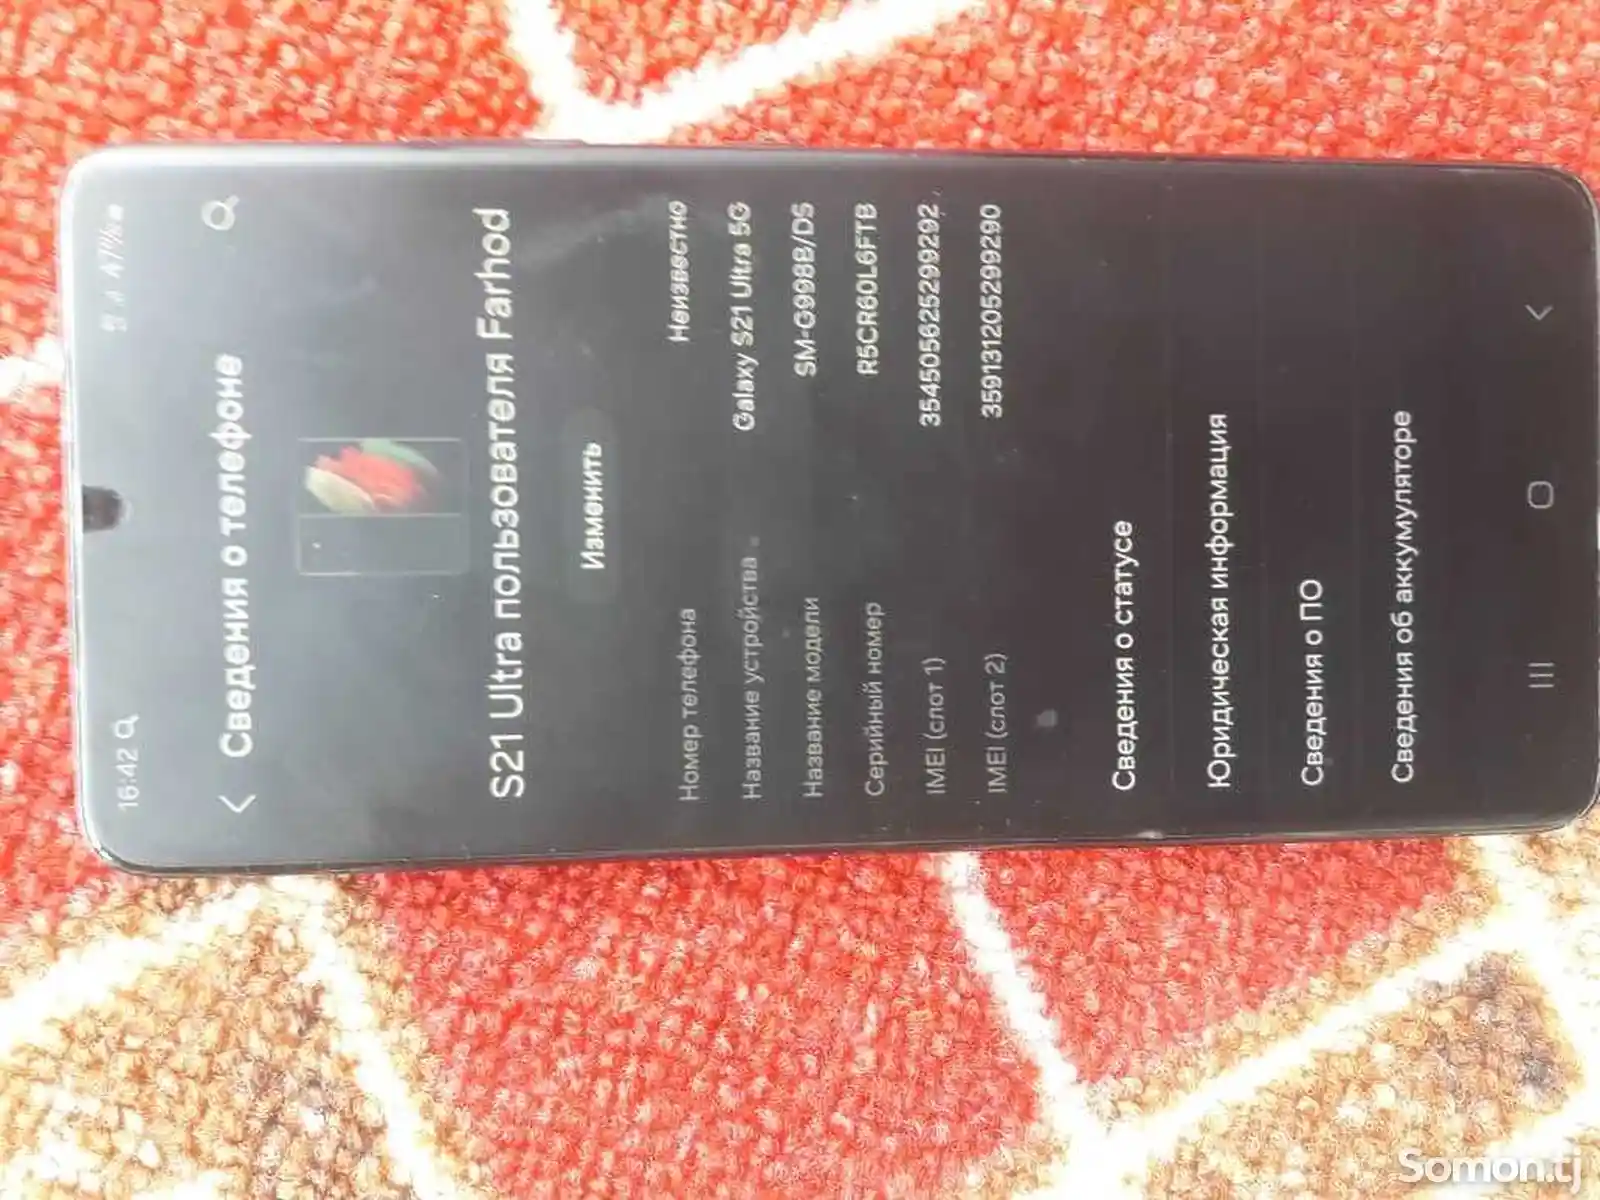 Samsung Galaxy S21 Ultra-3